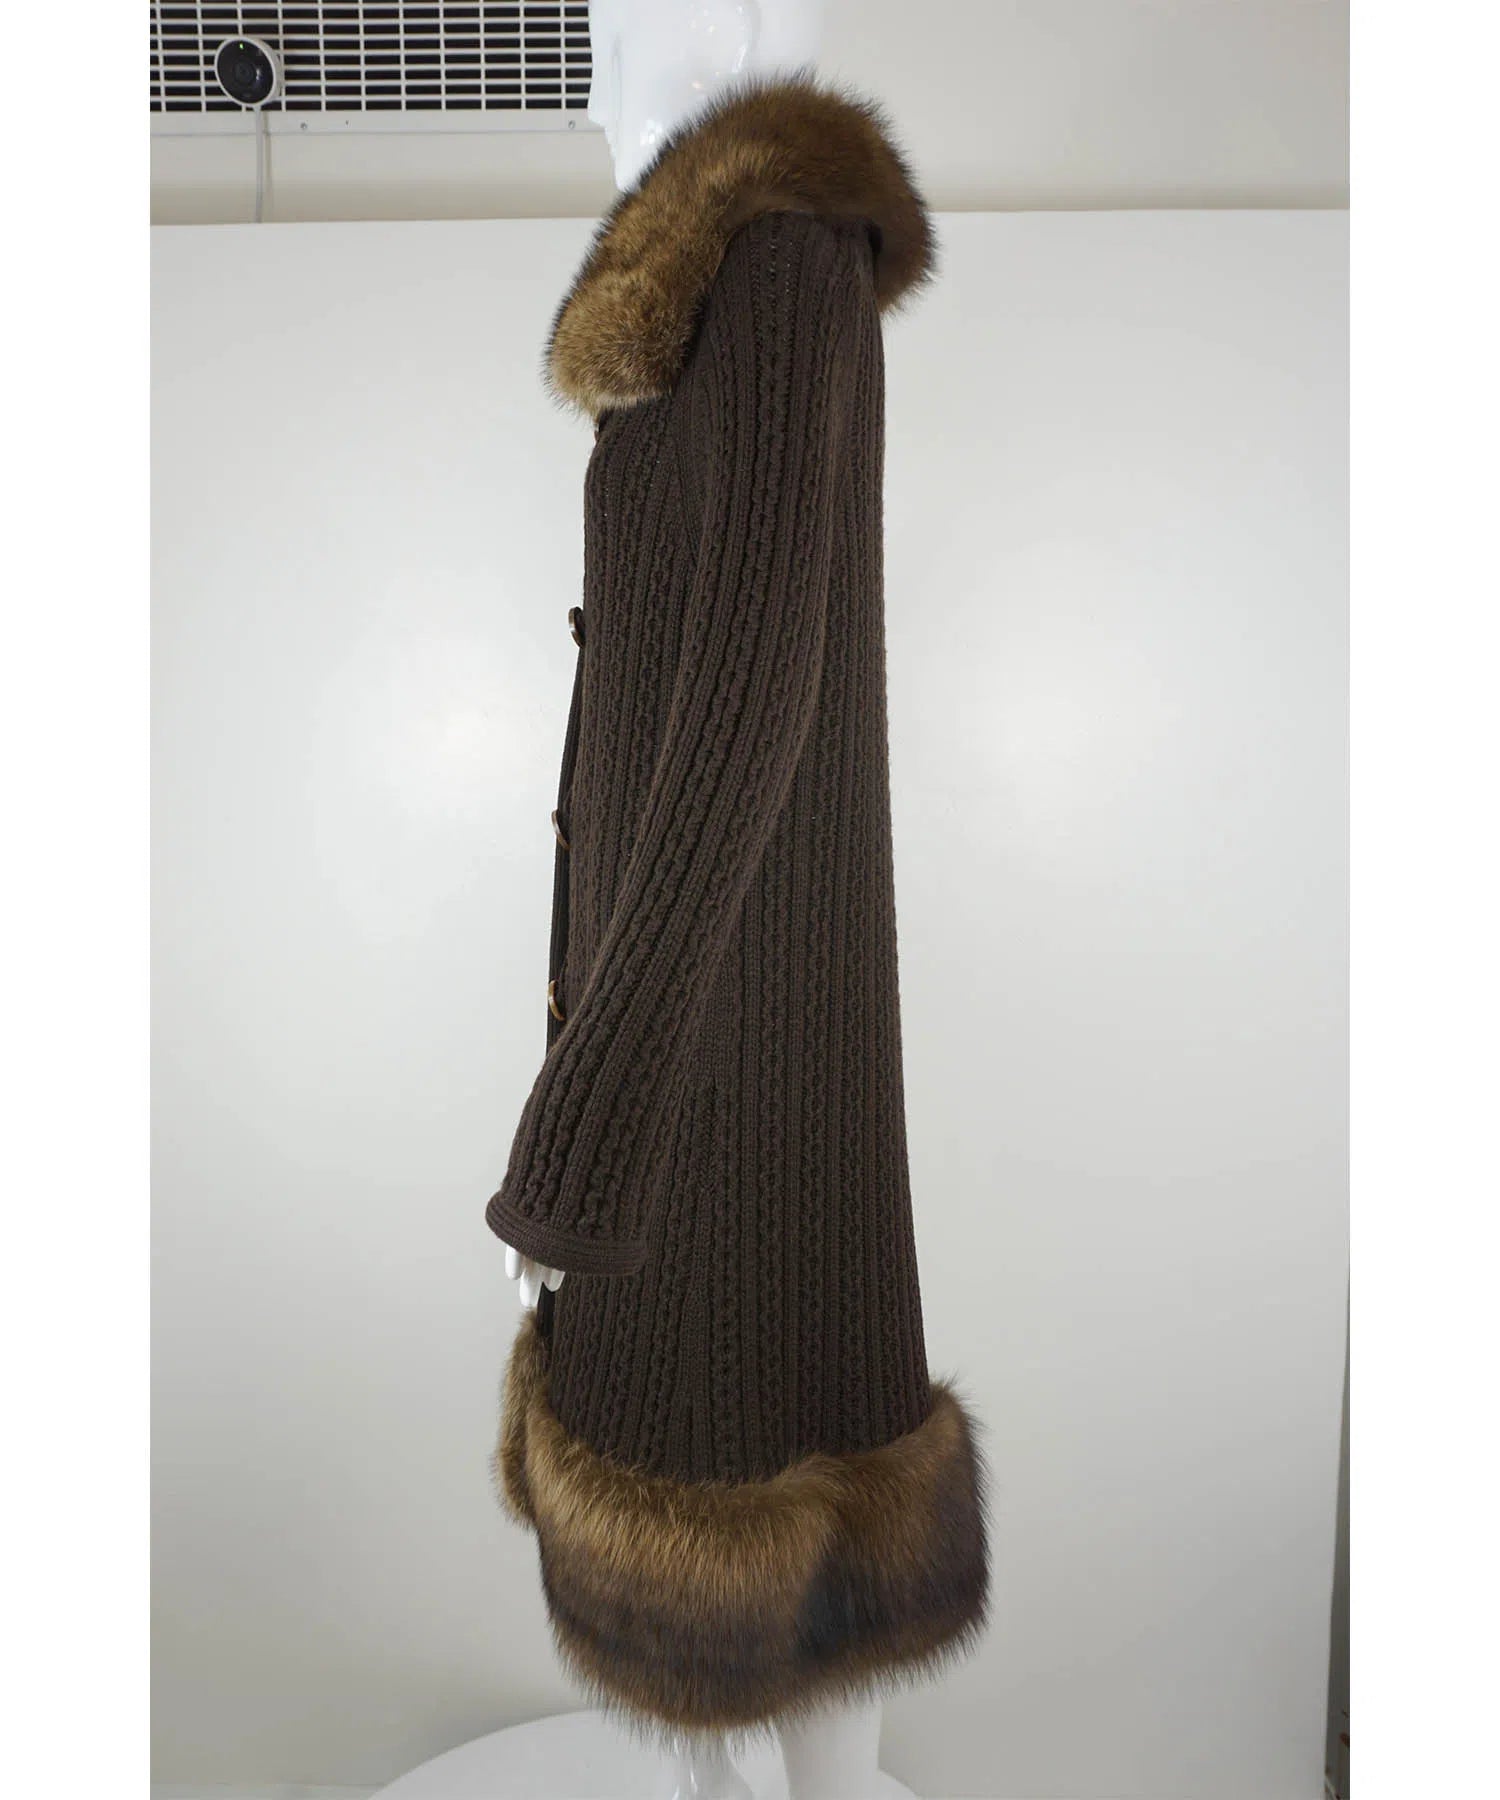 Oscar de la Renta 2007 Cable Knit Fur Cardigan - Foxy Couture Carmel